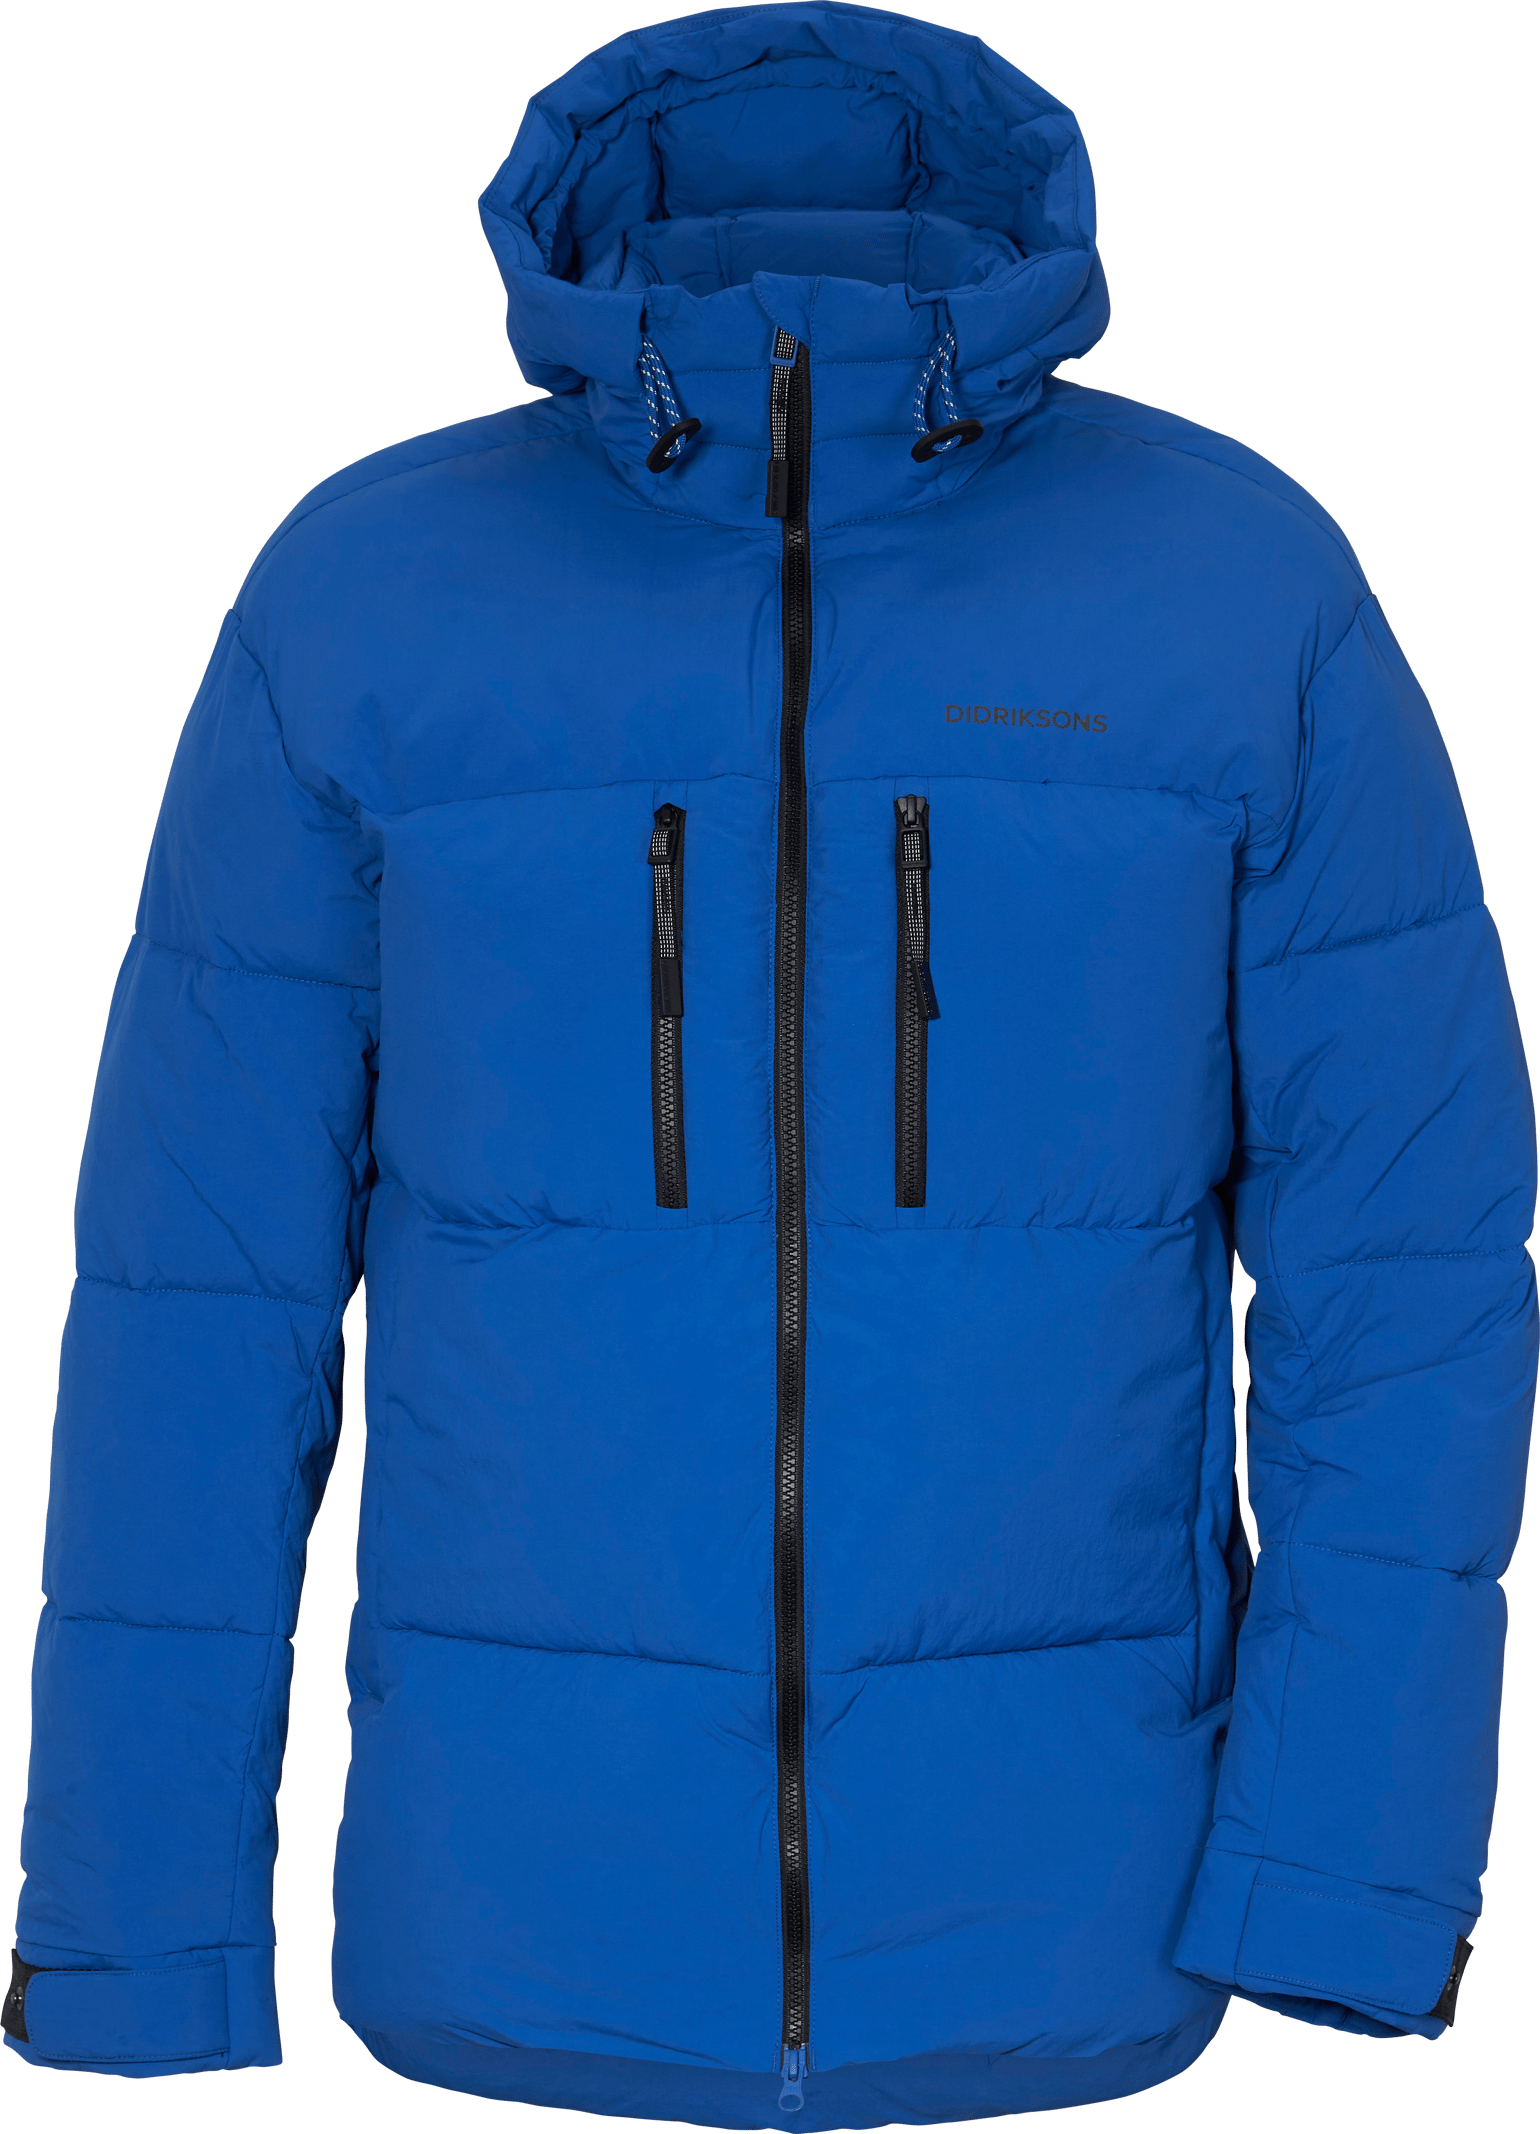 Hilmer Men's Jacket 2 Opti blue